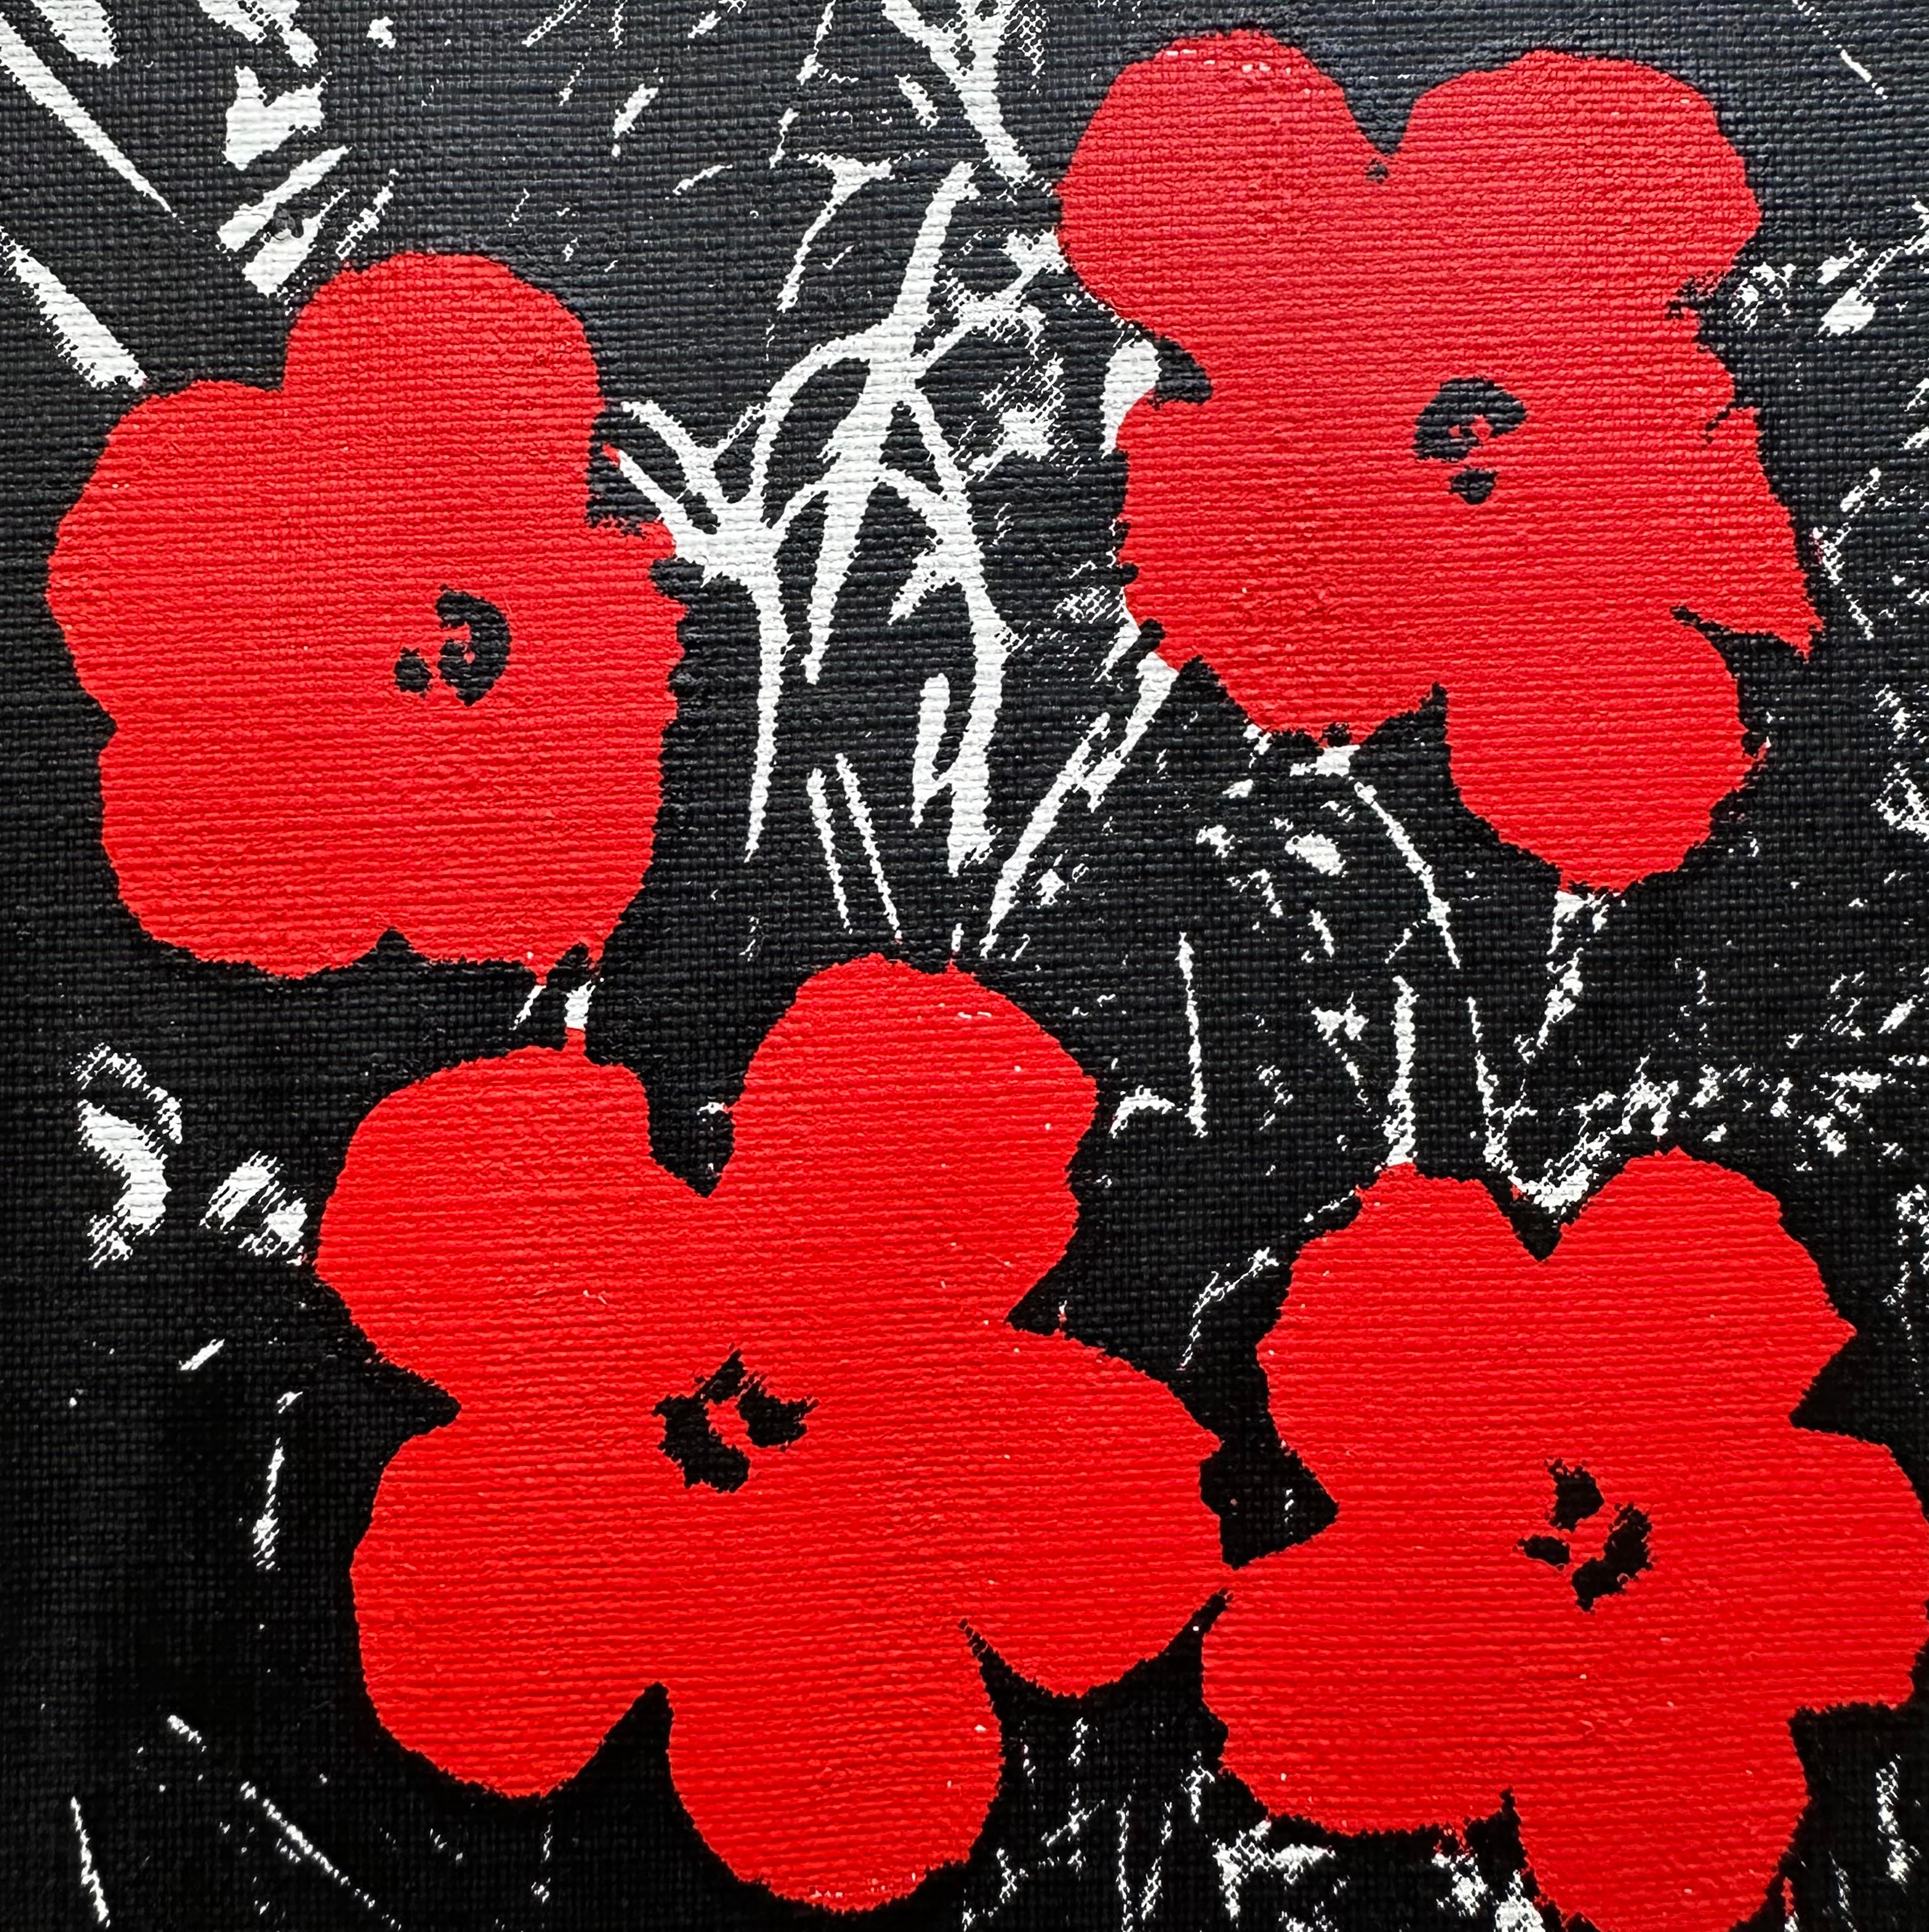 Denied Andy Warhol Flowers 5x5" sur lin Rouge Peinture Pop Art par Charles Lutz